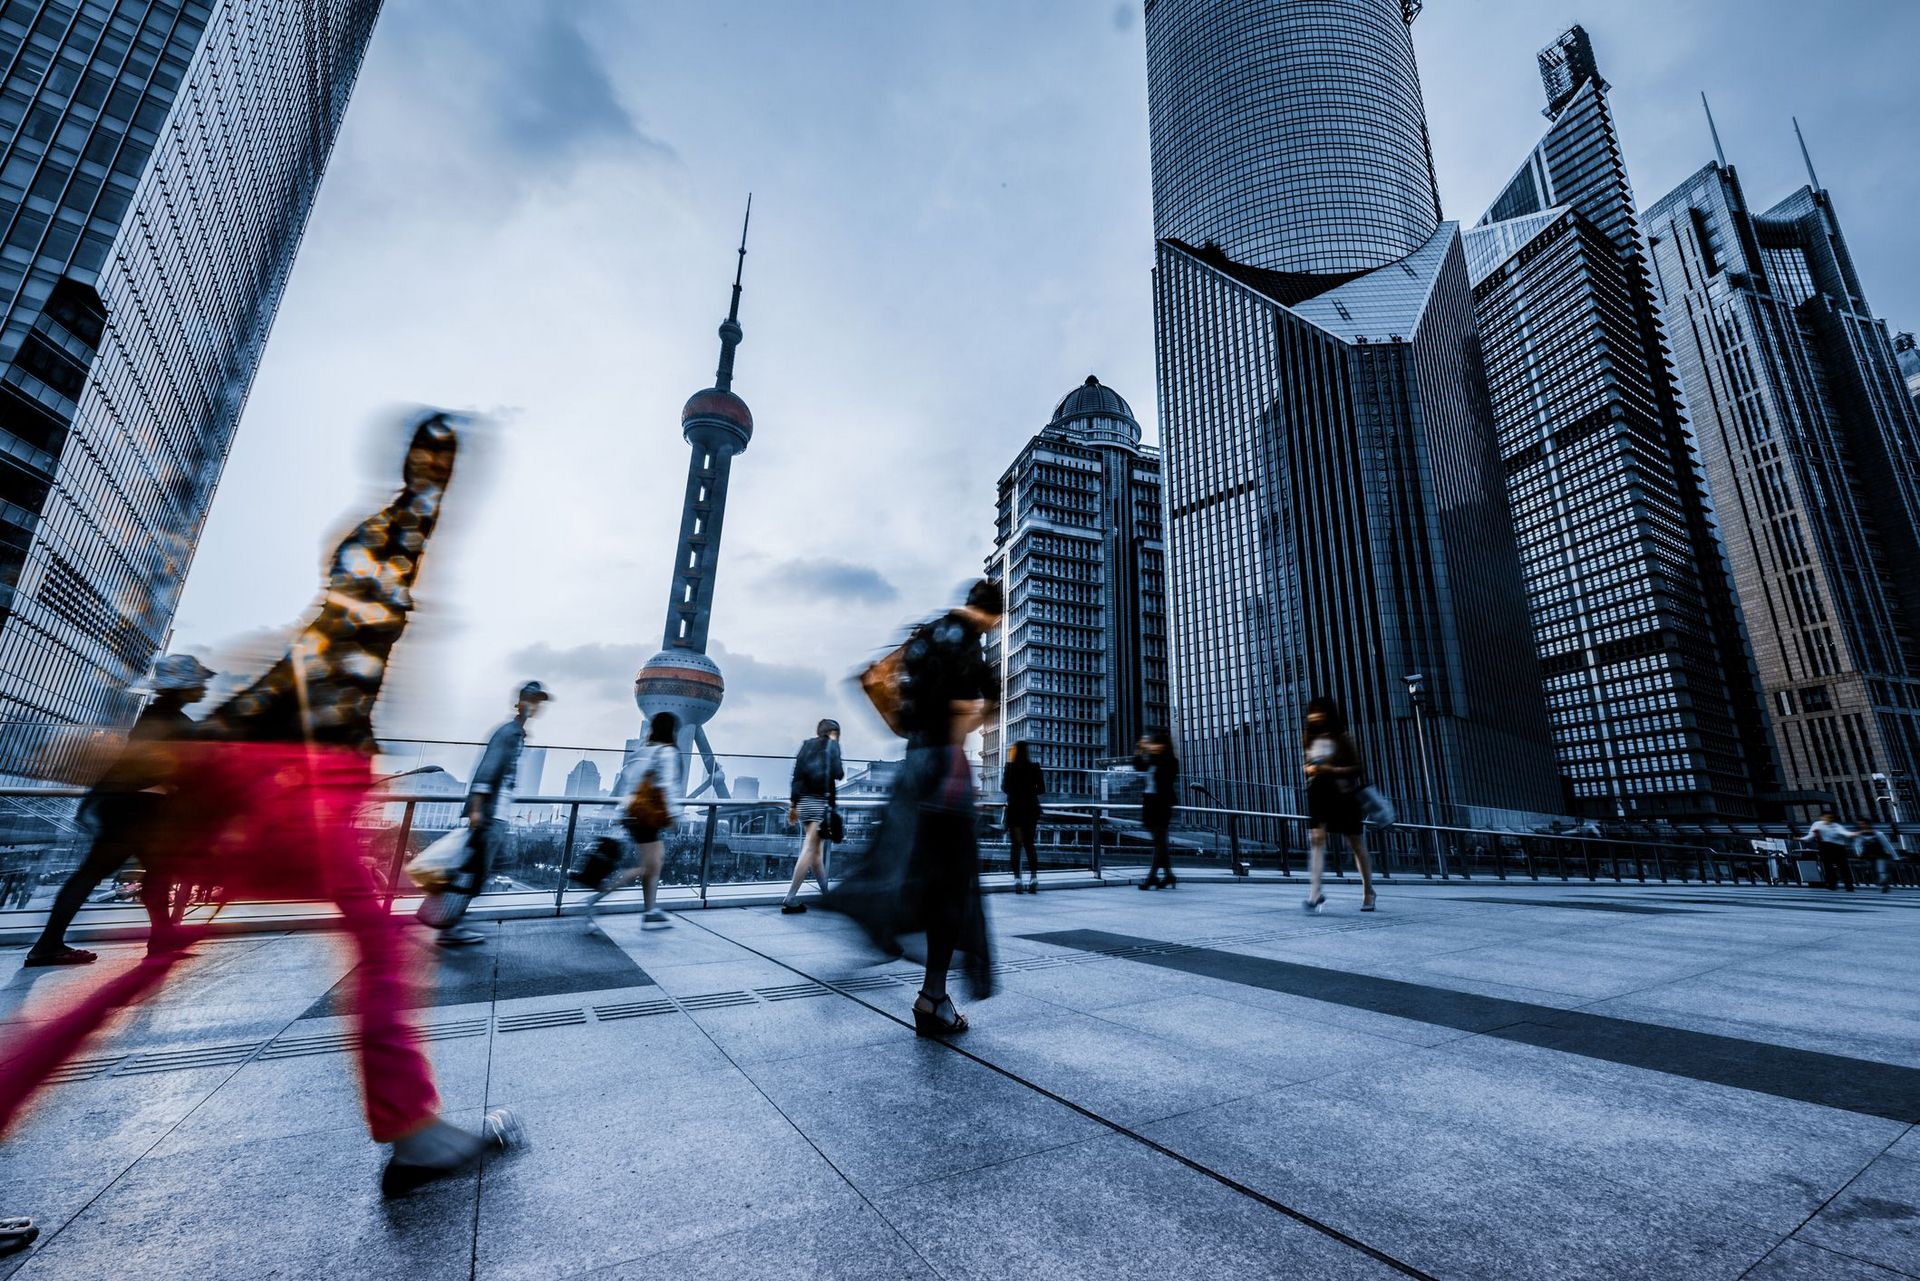 Firmengebäude (Skyline) einer größeren chinesischen Stadt. Im Vordergrund laufen verschiedene Menschen über einen Platz, die jedoch verschwommen dargestellt sind, damit das Bild dynamisch wirkt und ein hektisches Arbeitsleben widerspiegelt.